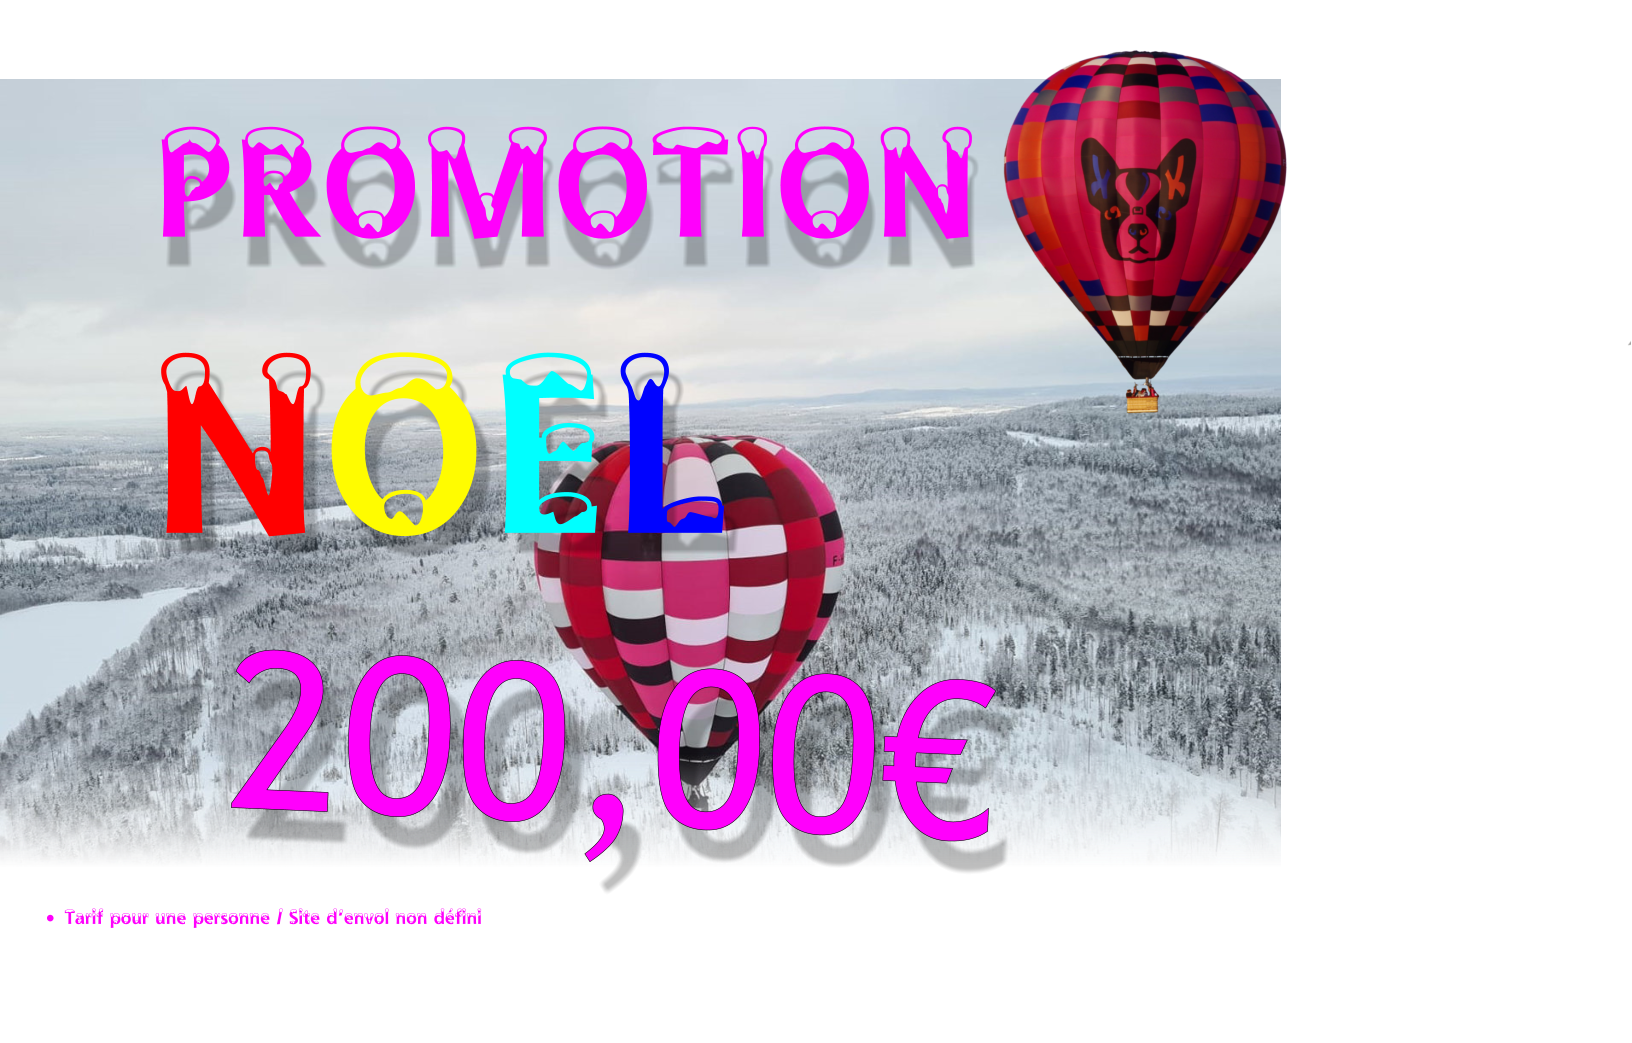 PROMOTION NOEL 200,00€ •	Tarif pour une personne / Site d’envol non défini